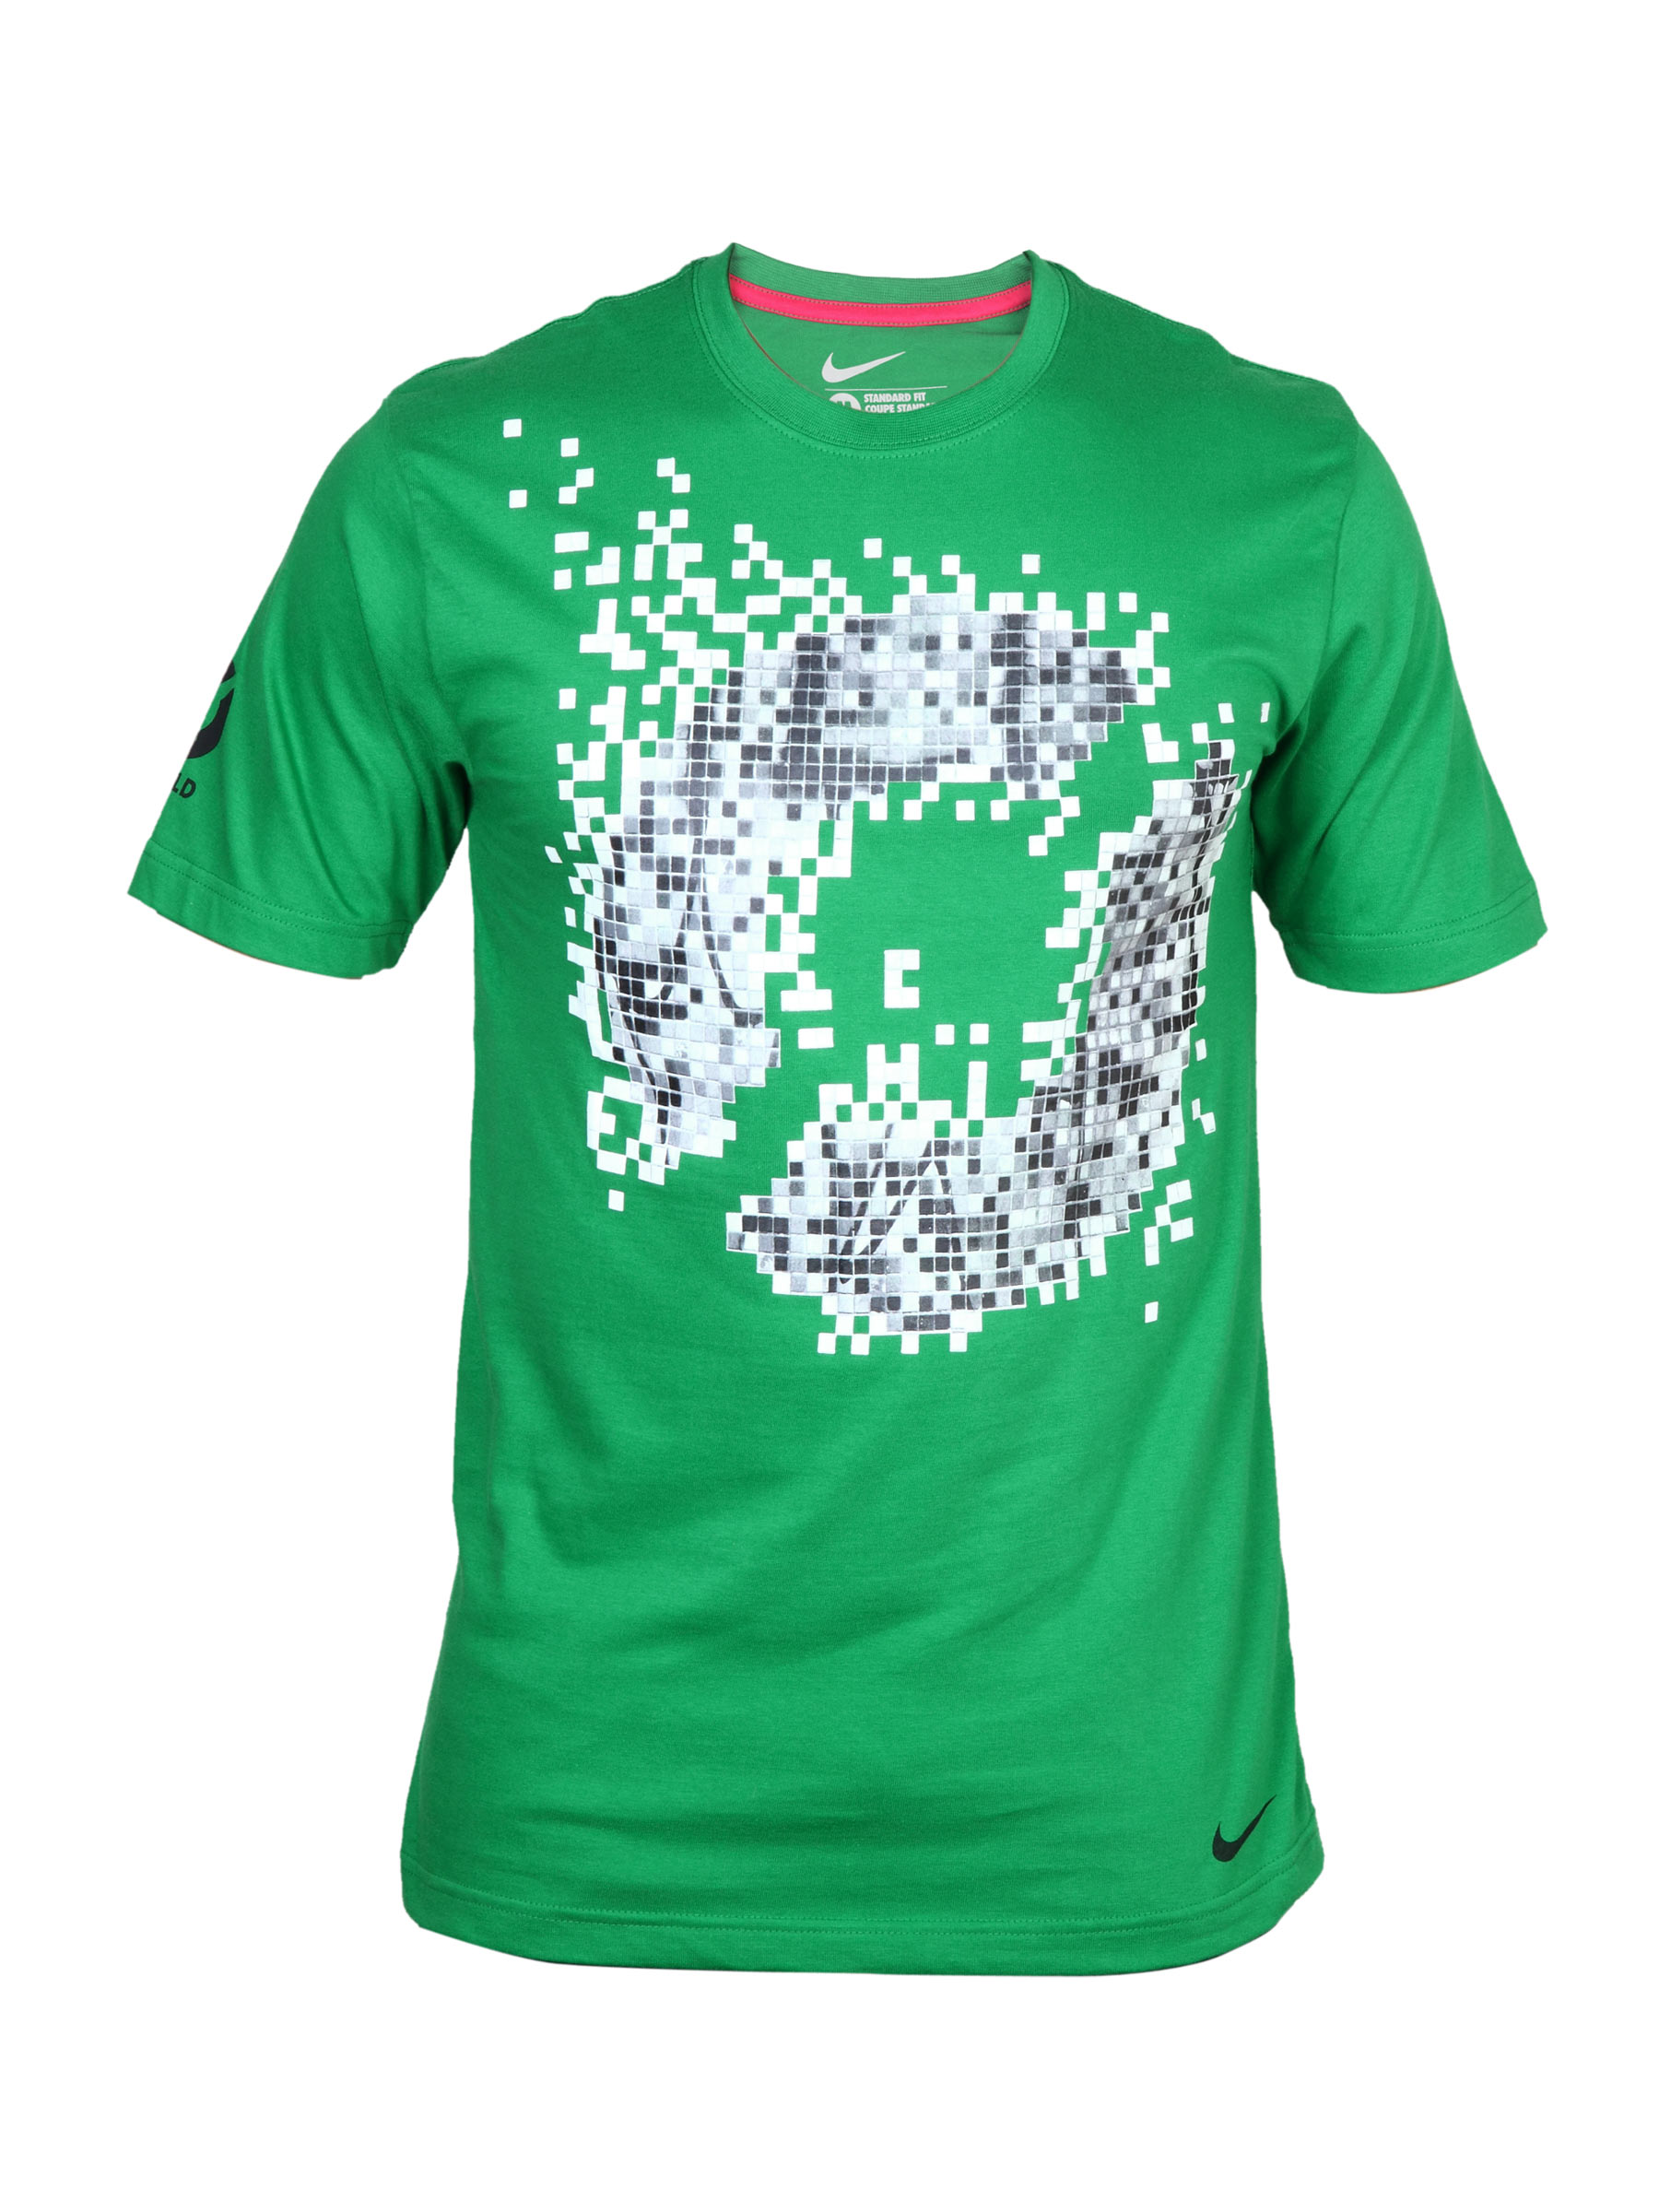 Nike Men's Football/Soccer Green T-shirt